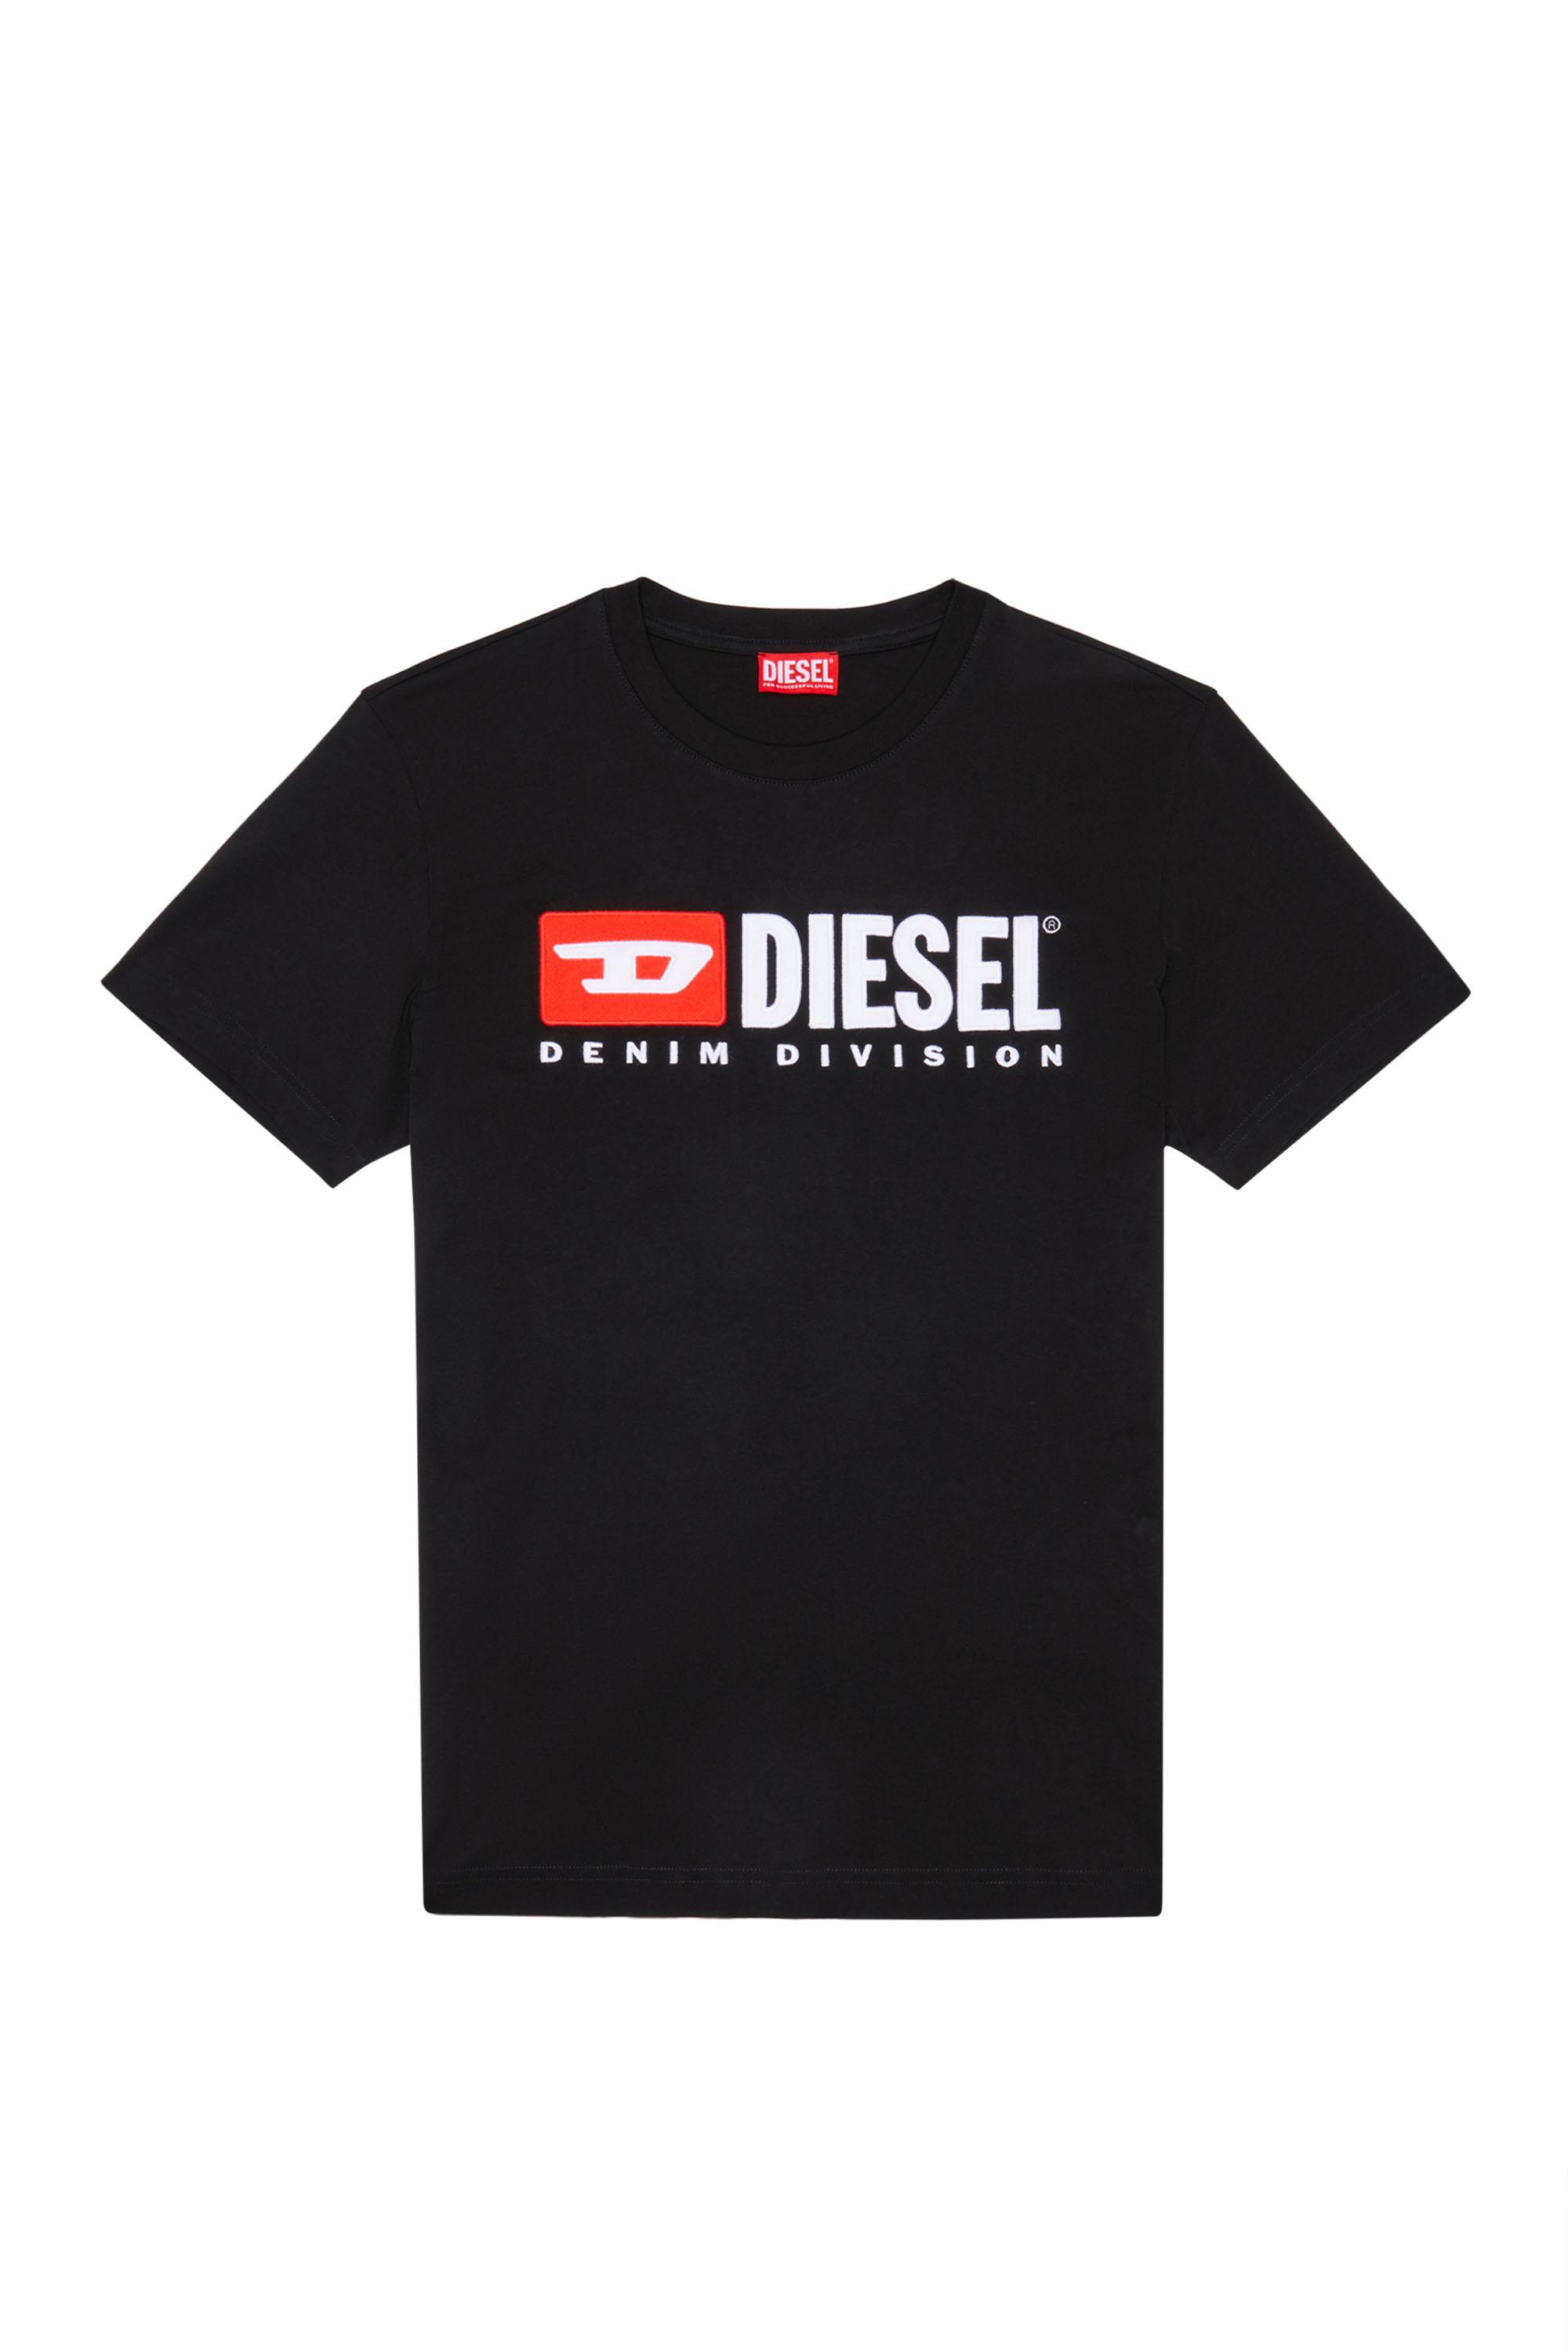 Diesel - T-DIEGOR-DIV, Schwarz - Image 2